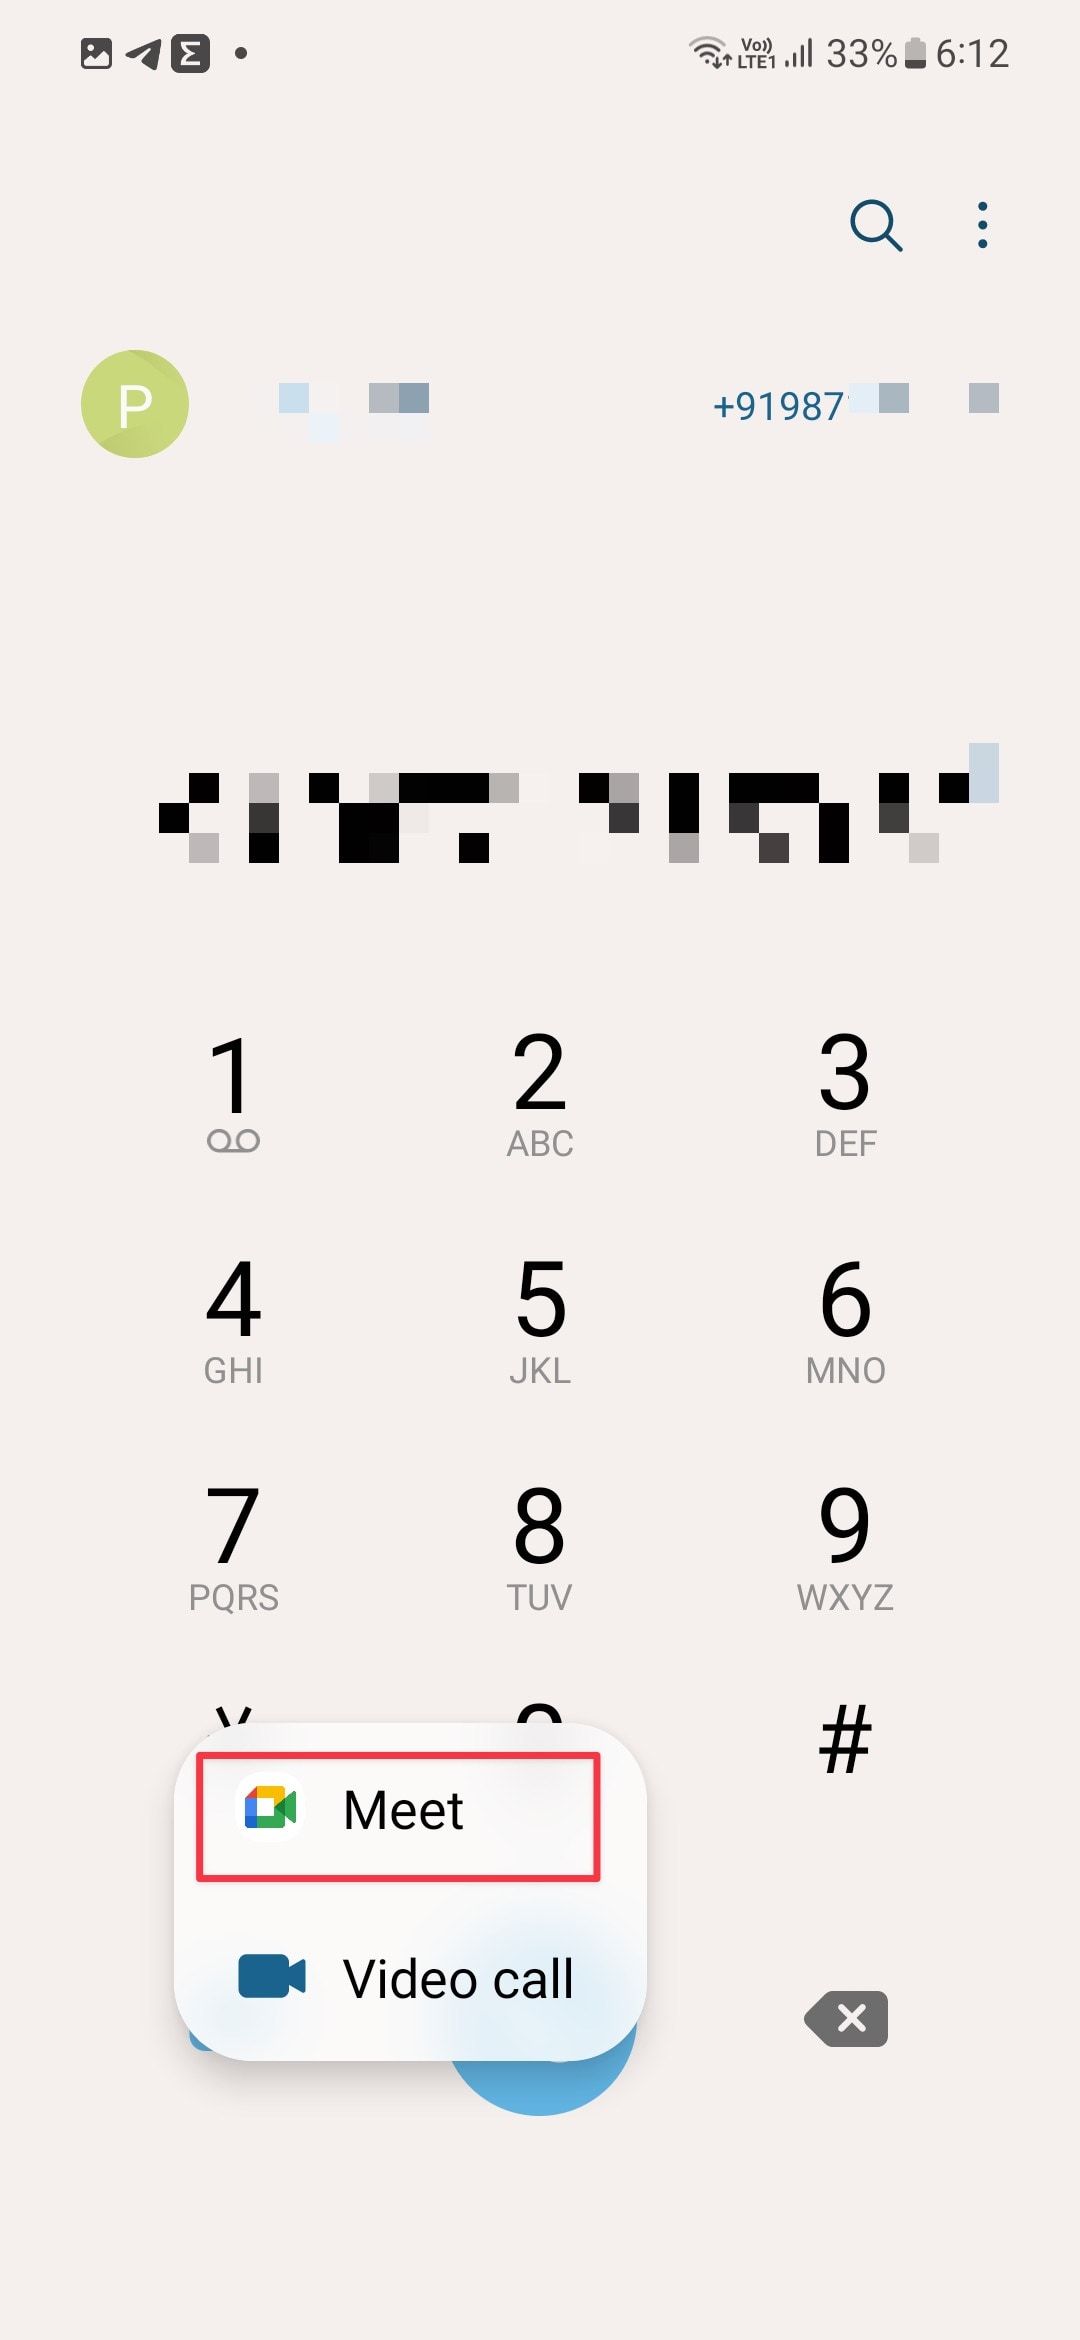 Samsung Dialer screenshot showing video call button